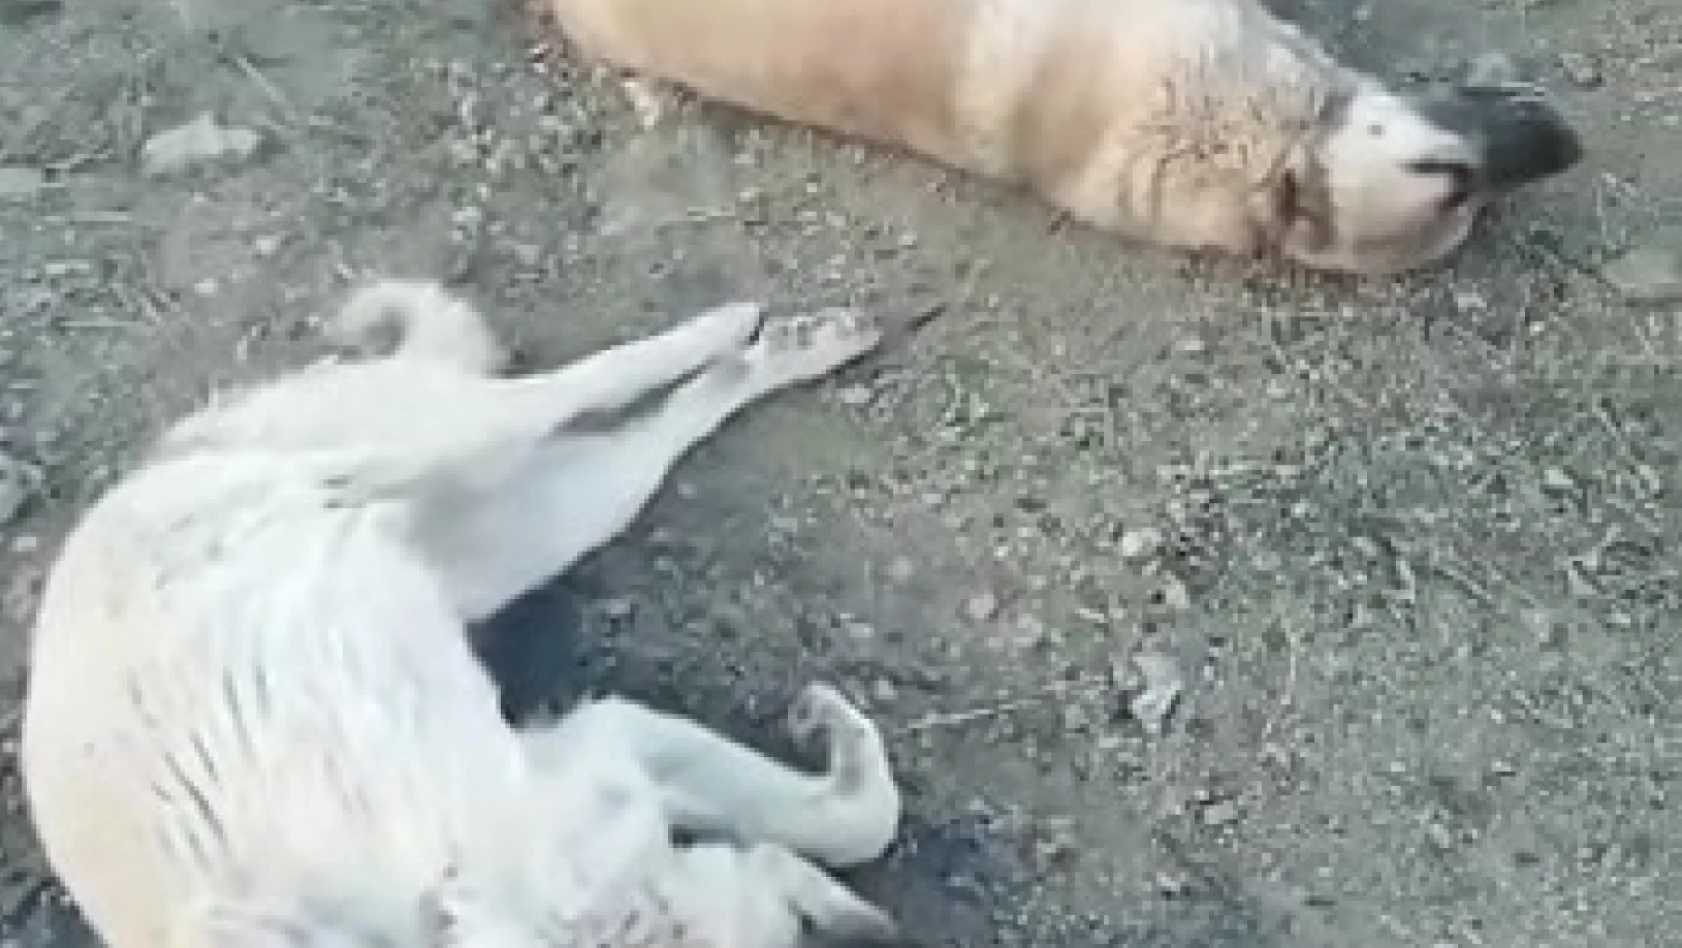 Elazığ'da köpek katliamı: 10 köpek zehirlendi